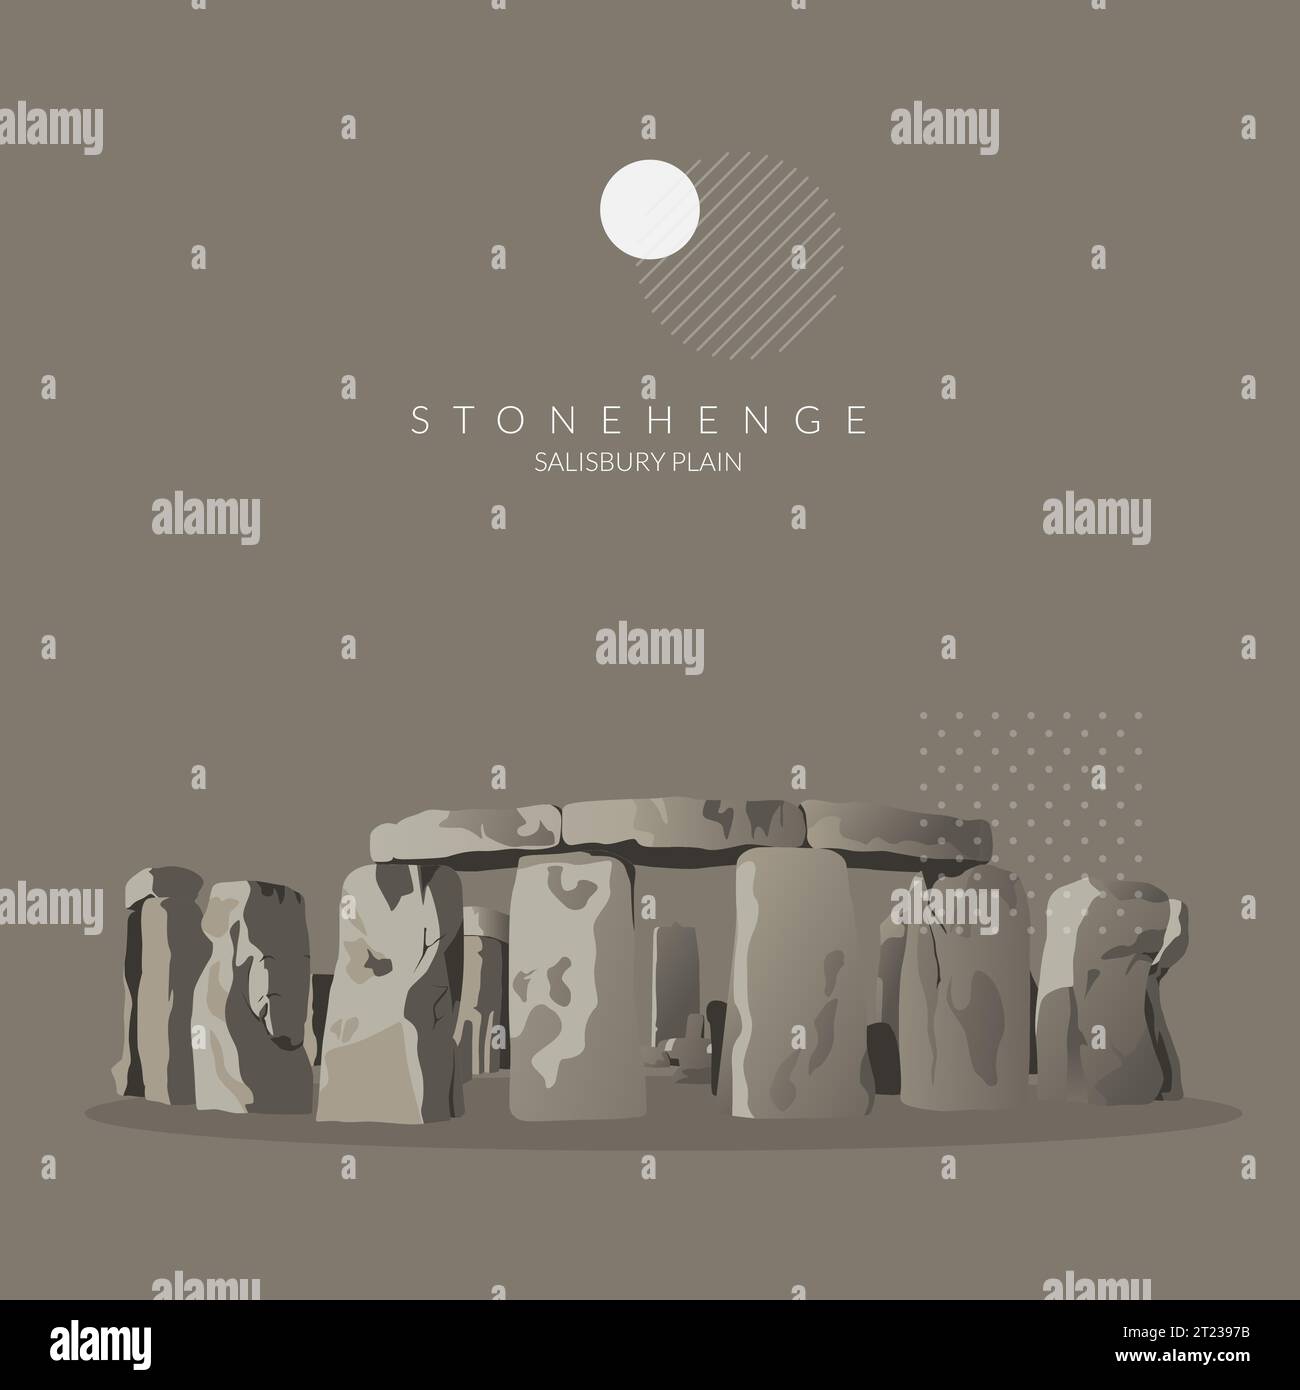 Stonehenge - Salisbury Plain, icona culturale del Regno Unito - Stock Illustration as EPS 10 file Illustrazione Vettoriale